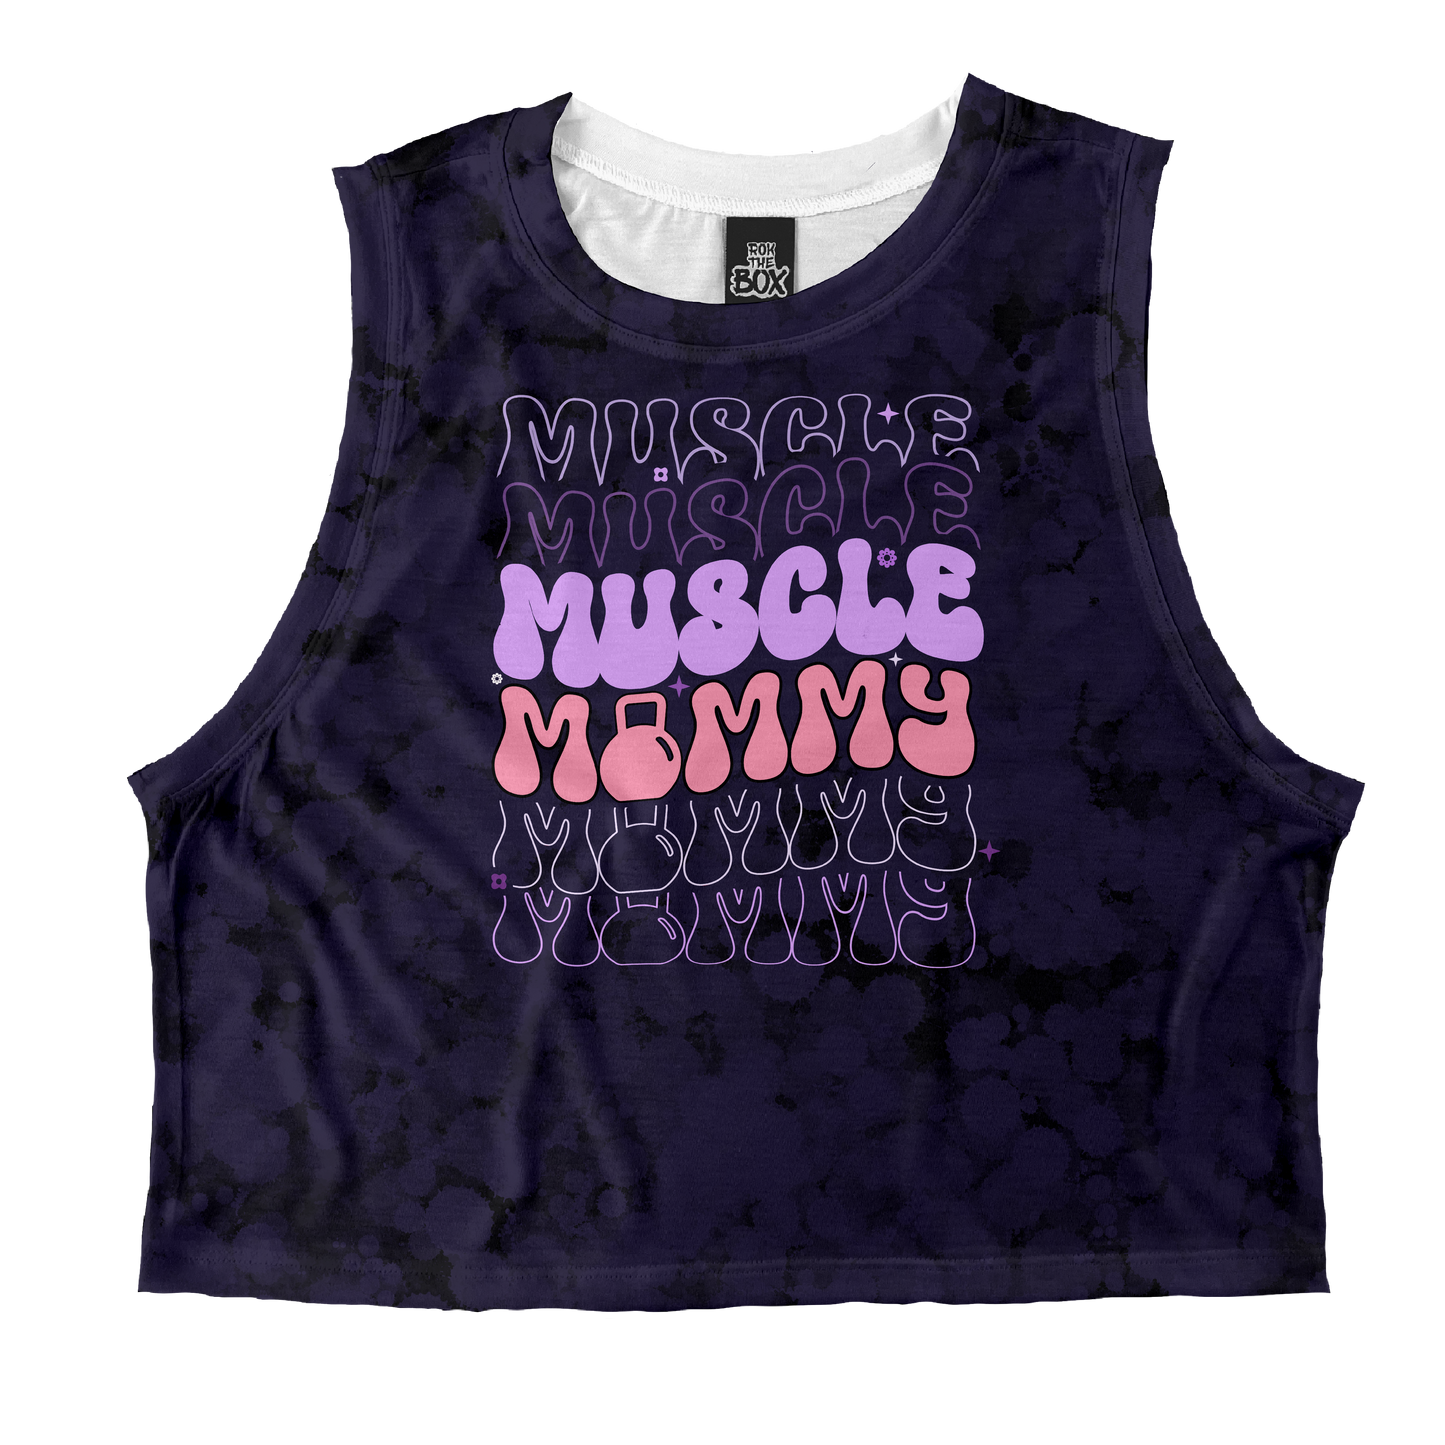 Triple Muscle Mommy (Purple) Tops